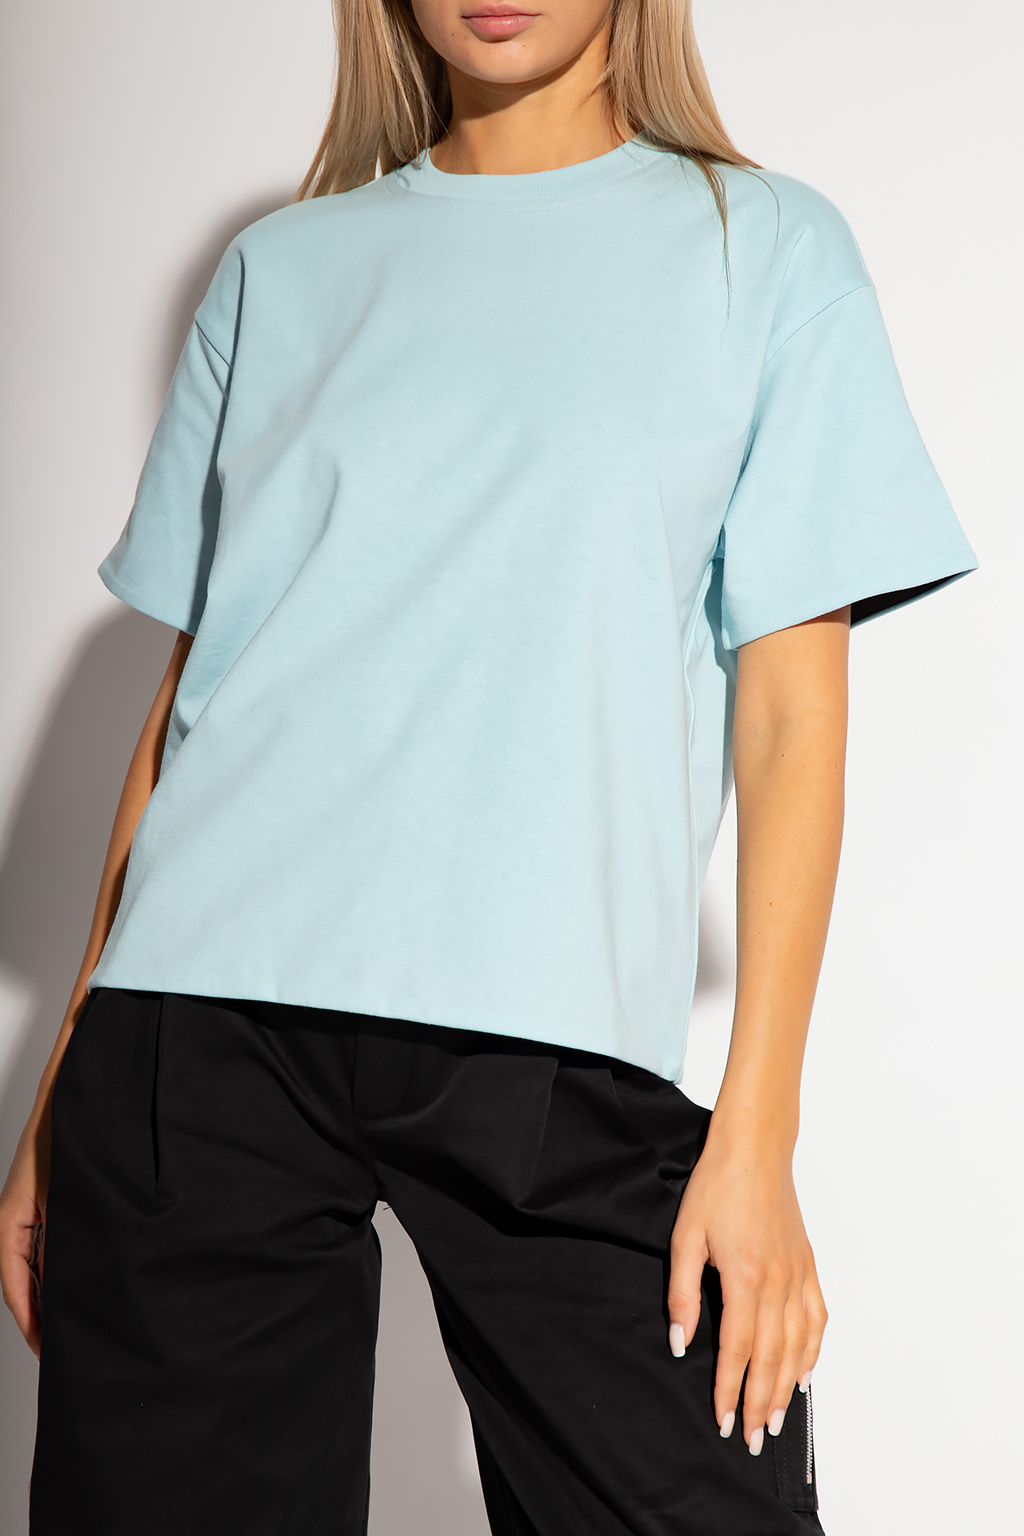 Louis Vuitton Monogram Wave Self-Tie T-Shirt Blue. Size Xs